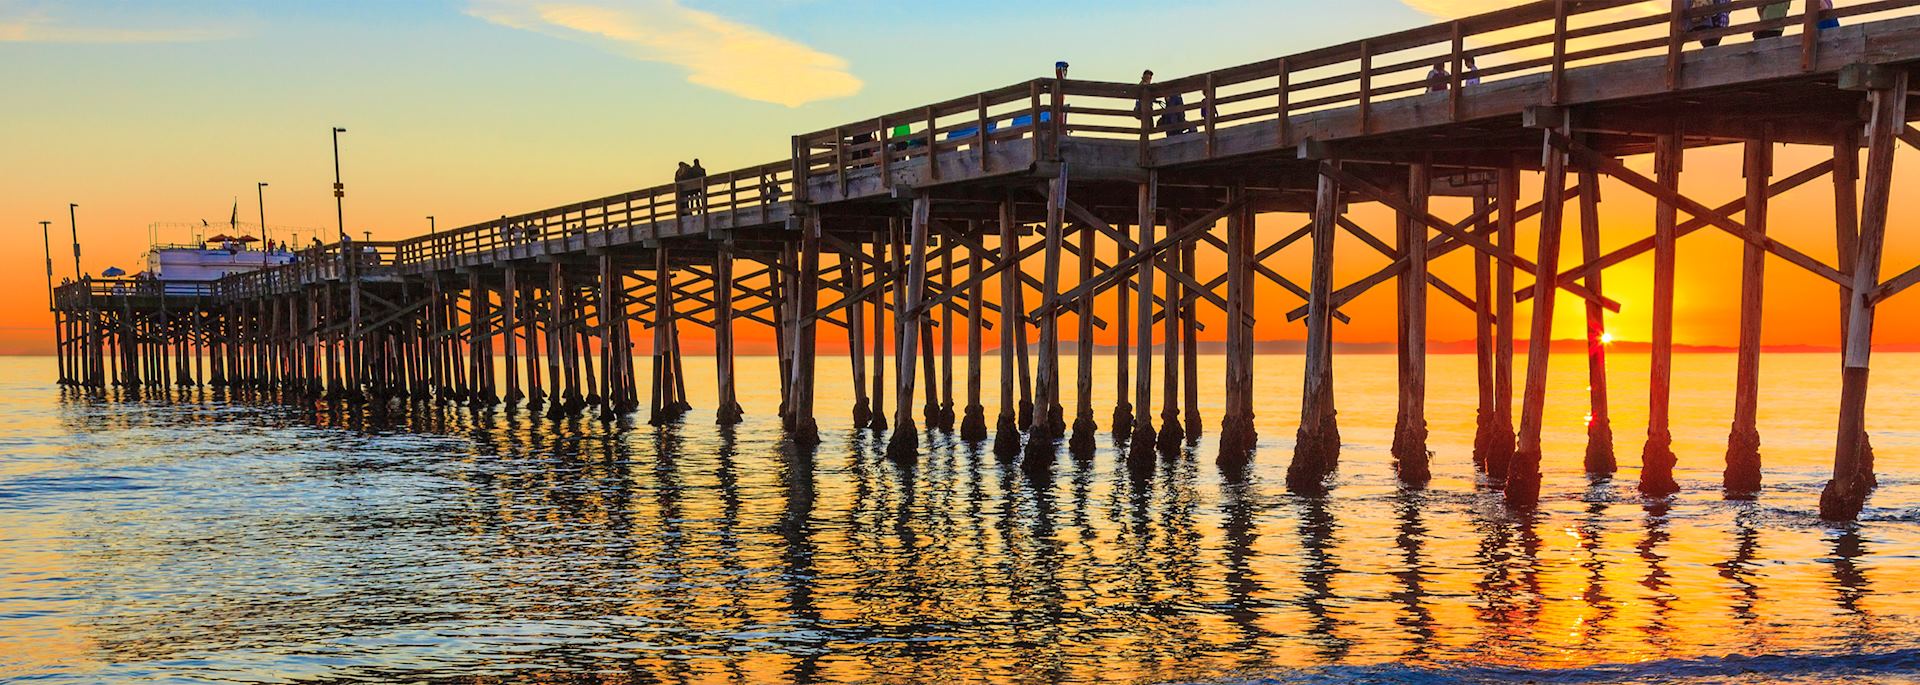 Balboa Pier in Orange County, California